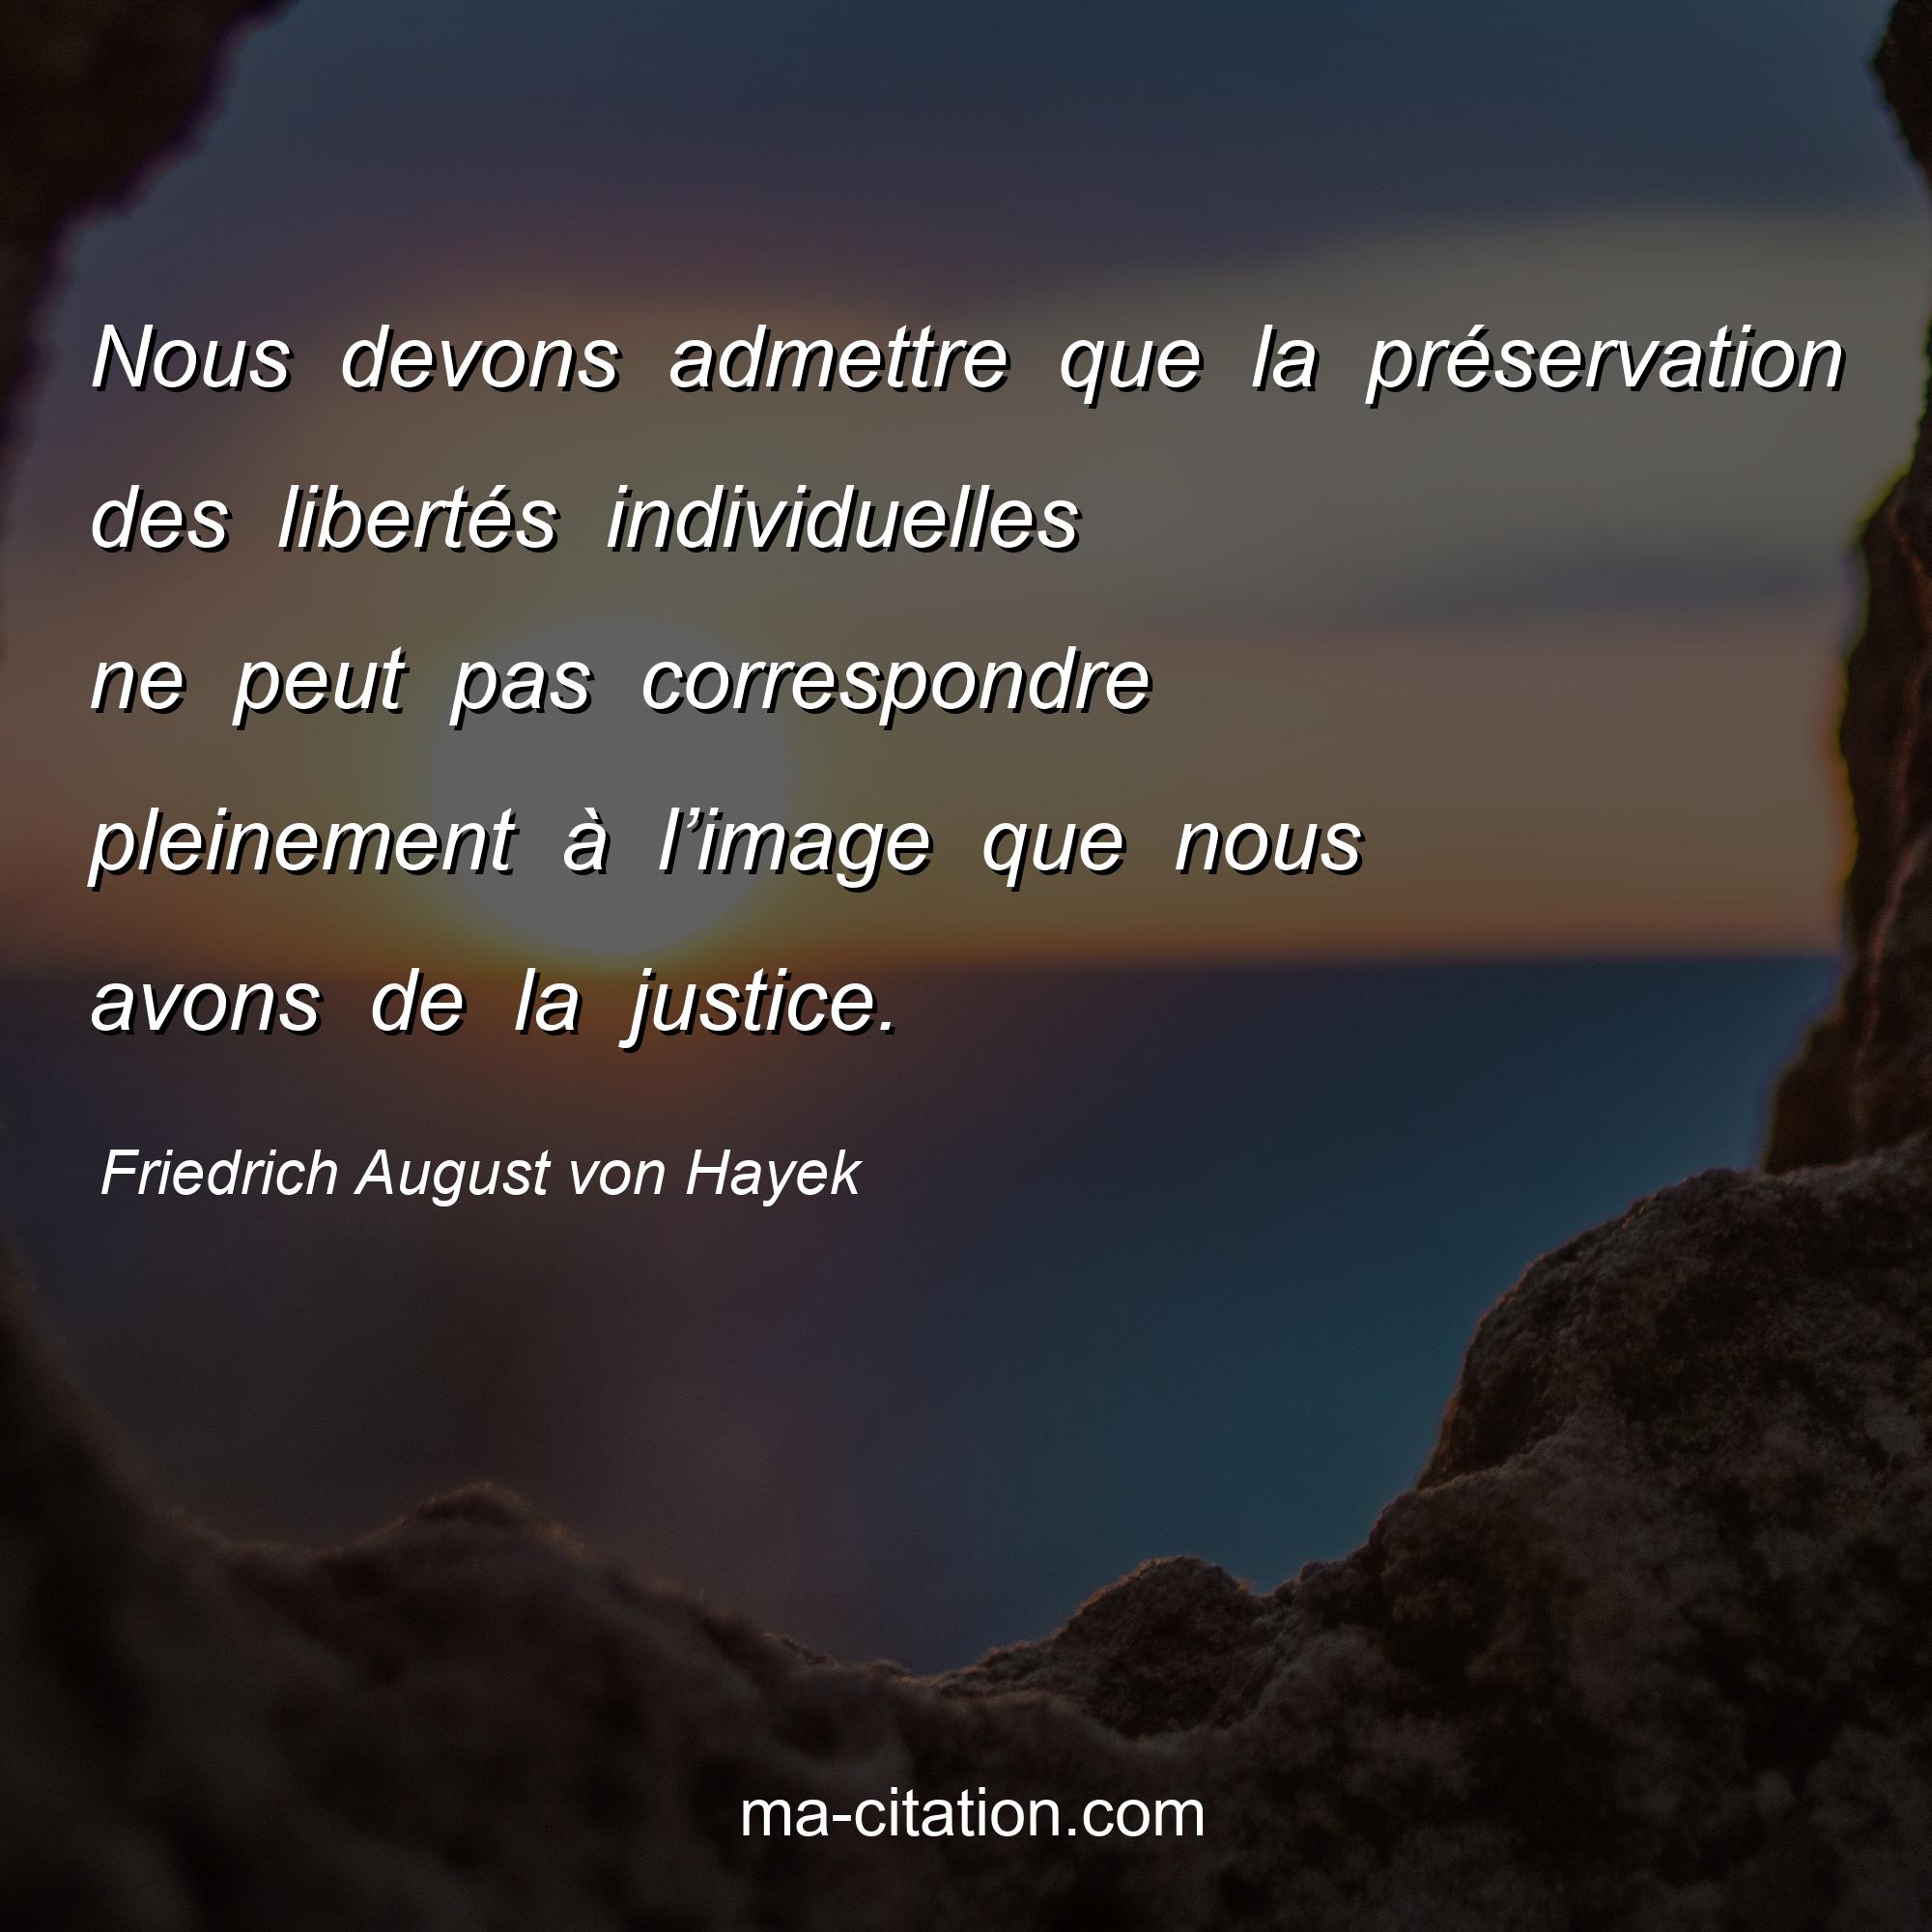 Friedrich August von Hayek : Nous devons admettre que la préservation des libertés individuelles ne peut pas correspondre pleinement à l’image que nous avons de la justice.